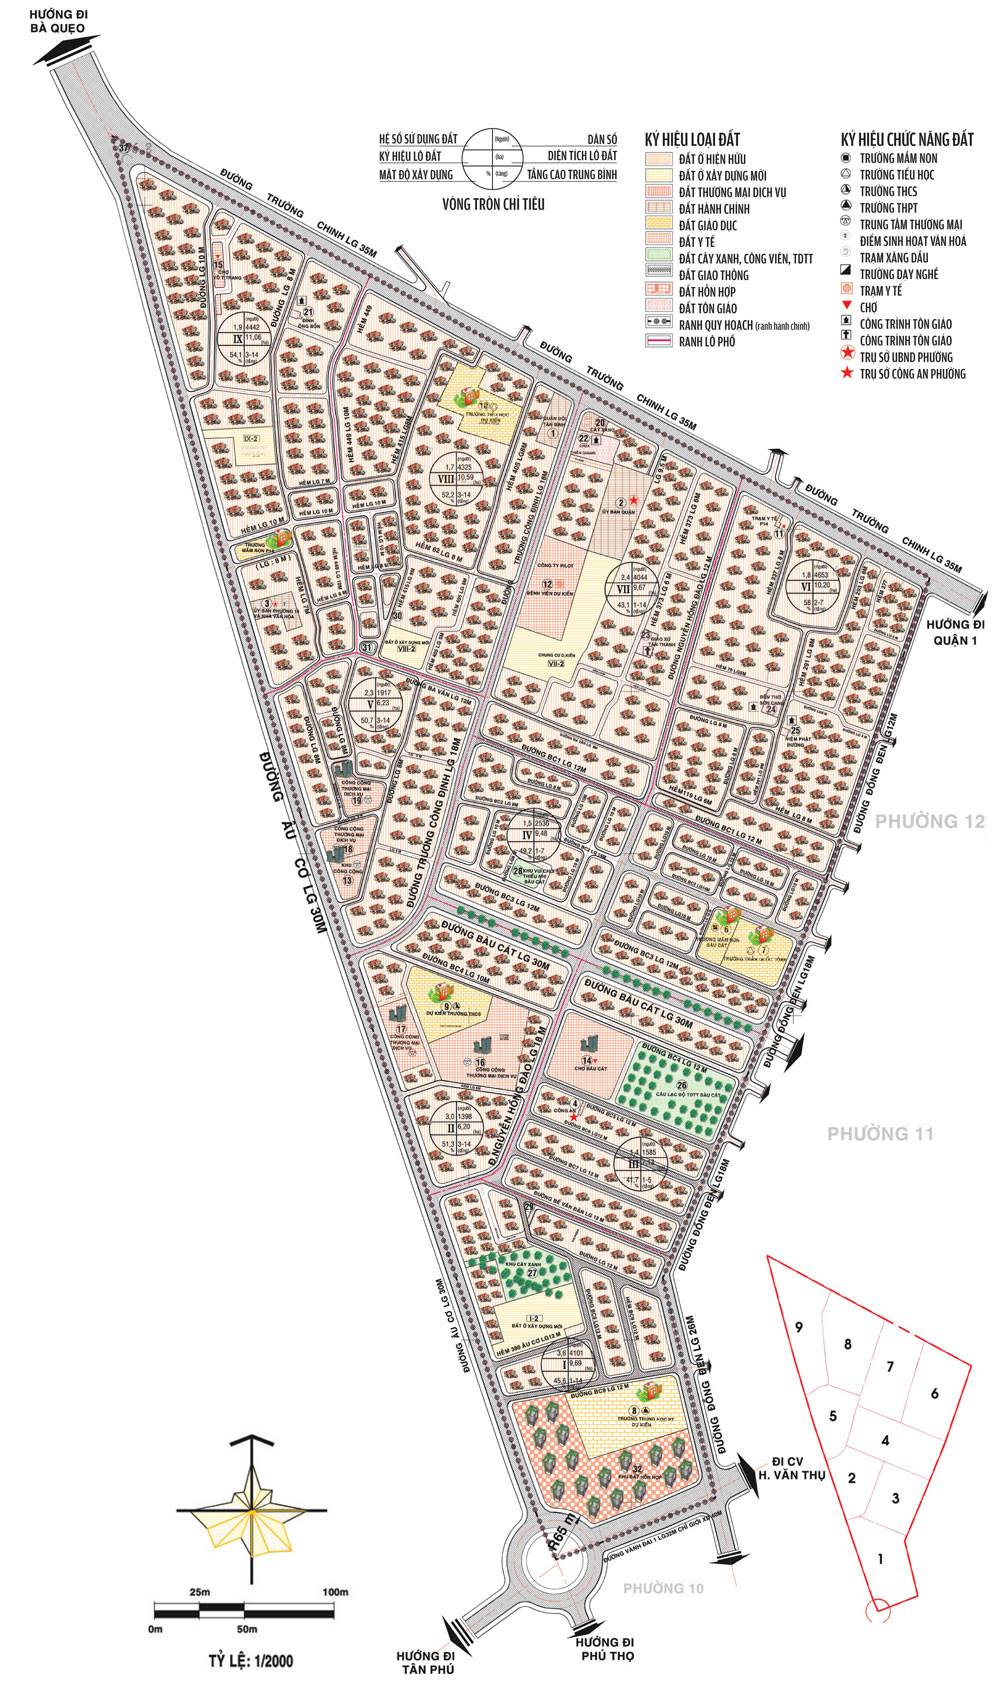 Bản đồ quy hoạch chi tiết phường 14 quận Tân Bình có tỷ lệ 1/2000 - Yeshouse